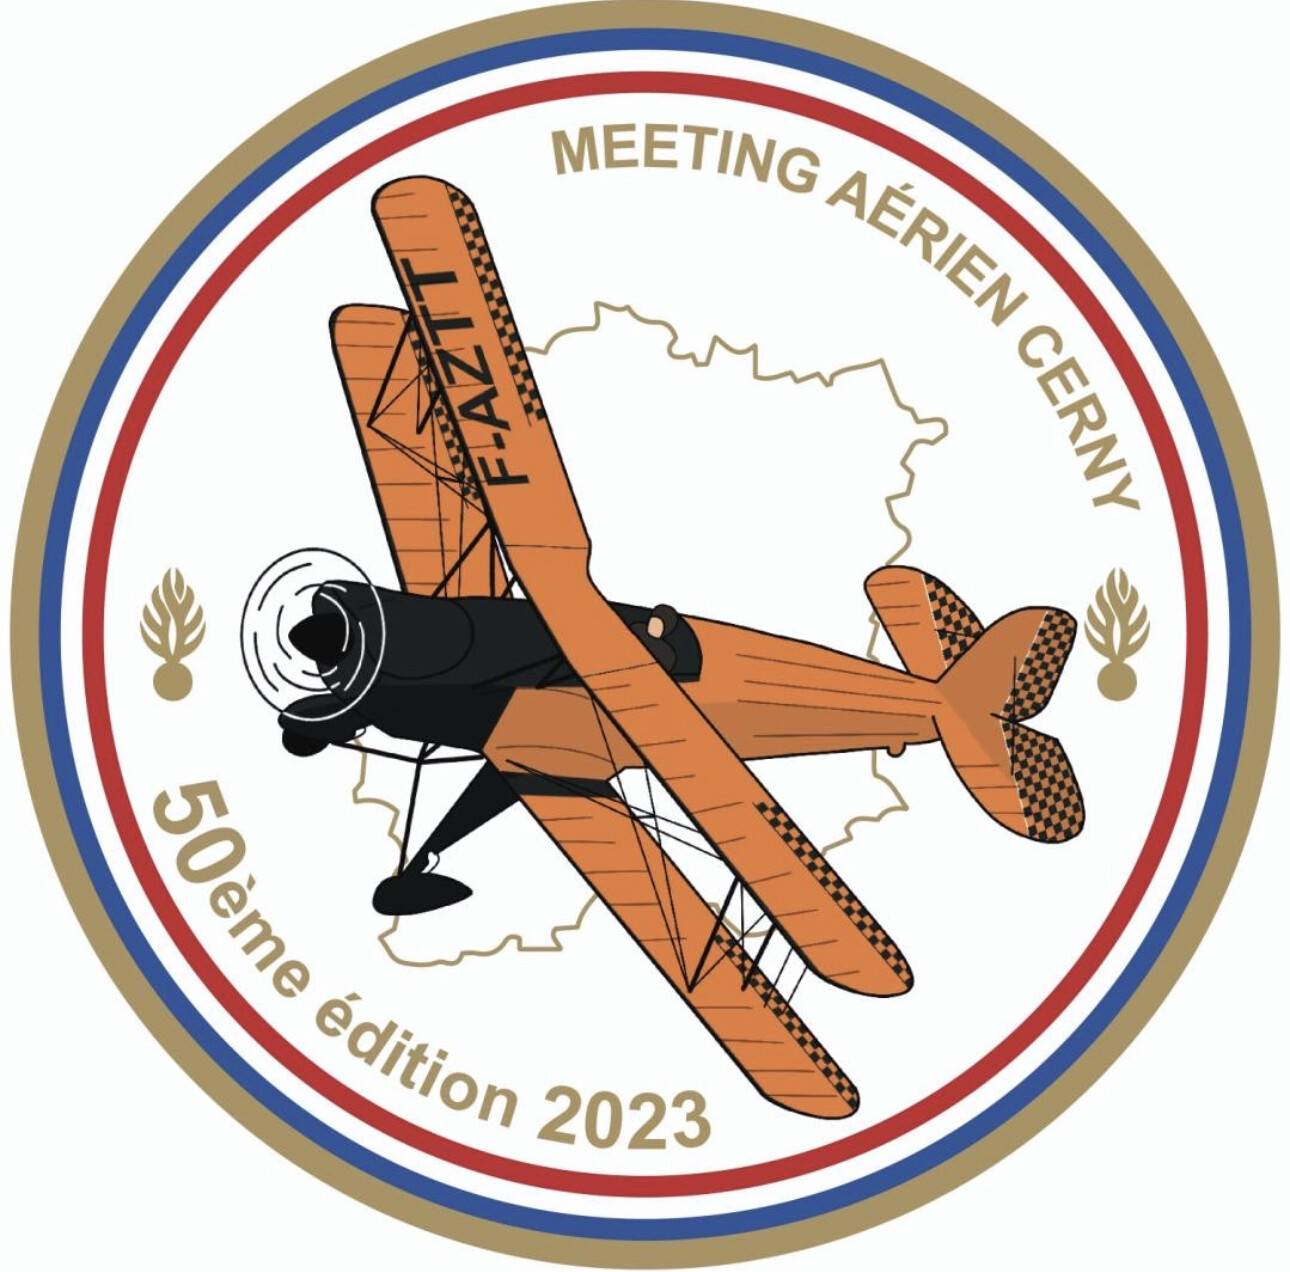 Rondache Meeting aérien de Cerny-La Ferté-Alais 2023